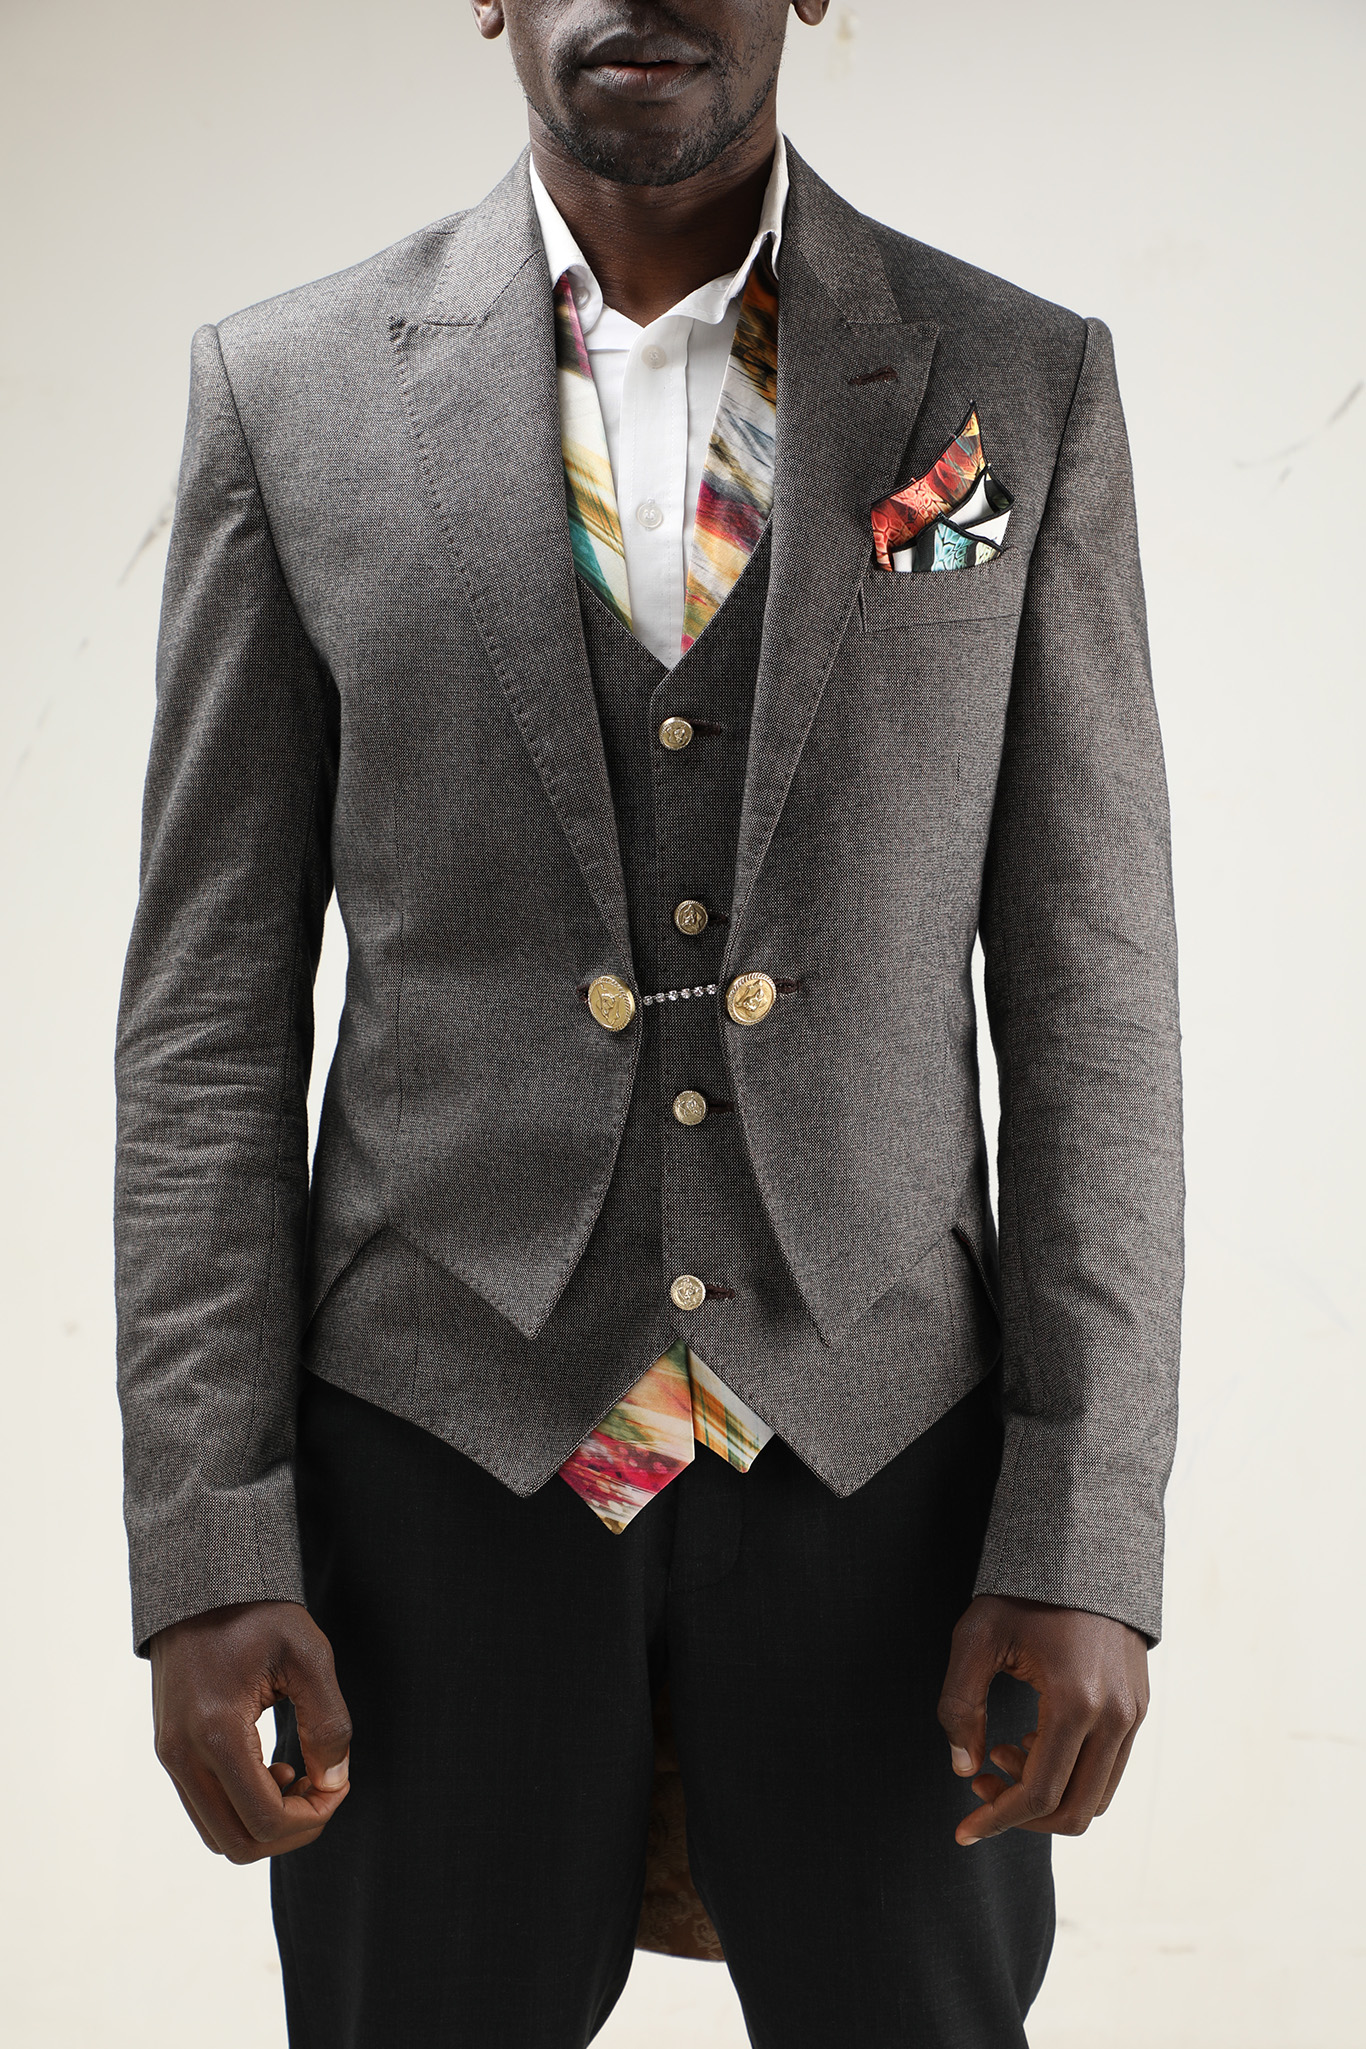 Wedding tailcoat tuxedo for men Nairobi Kenya